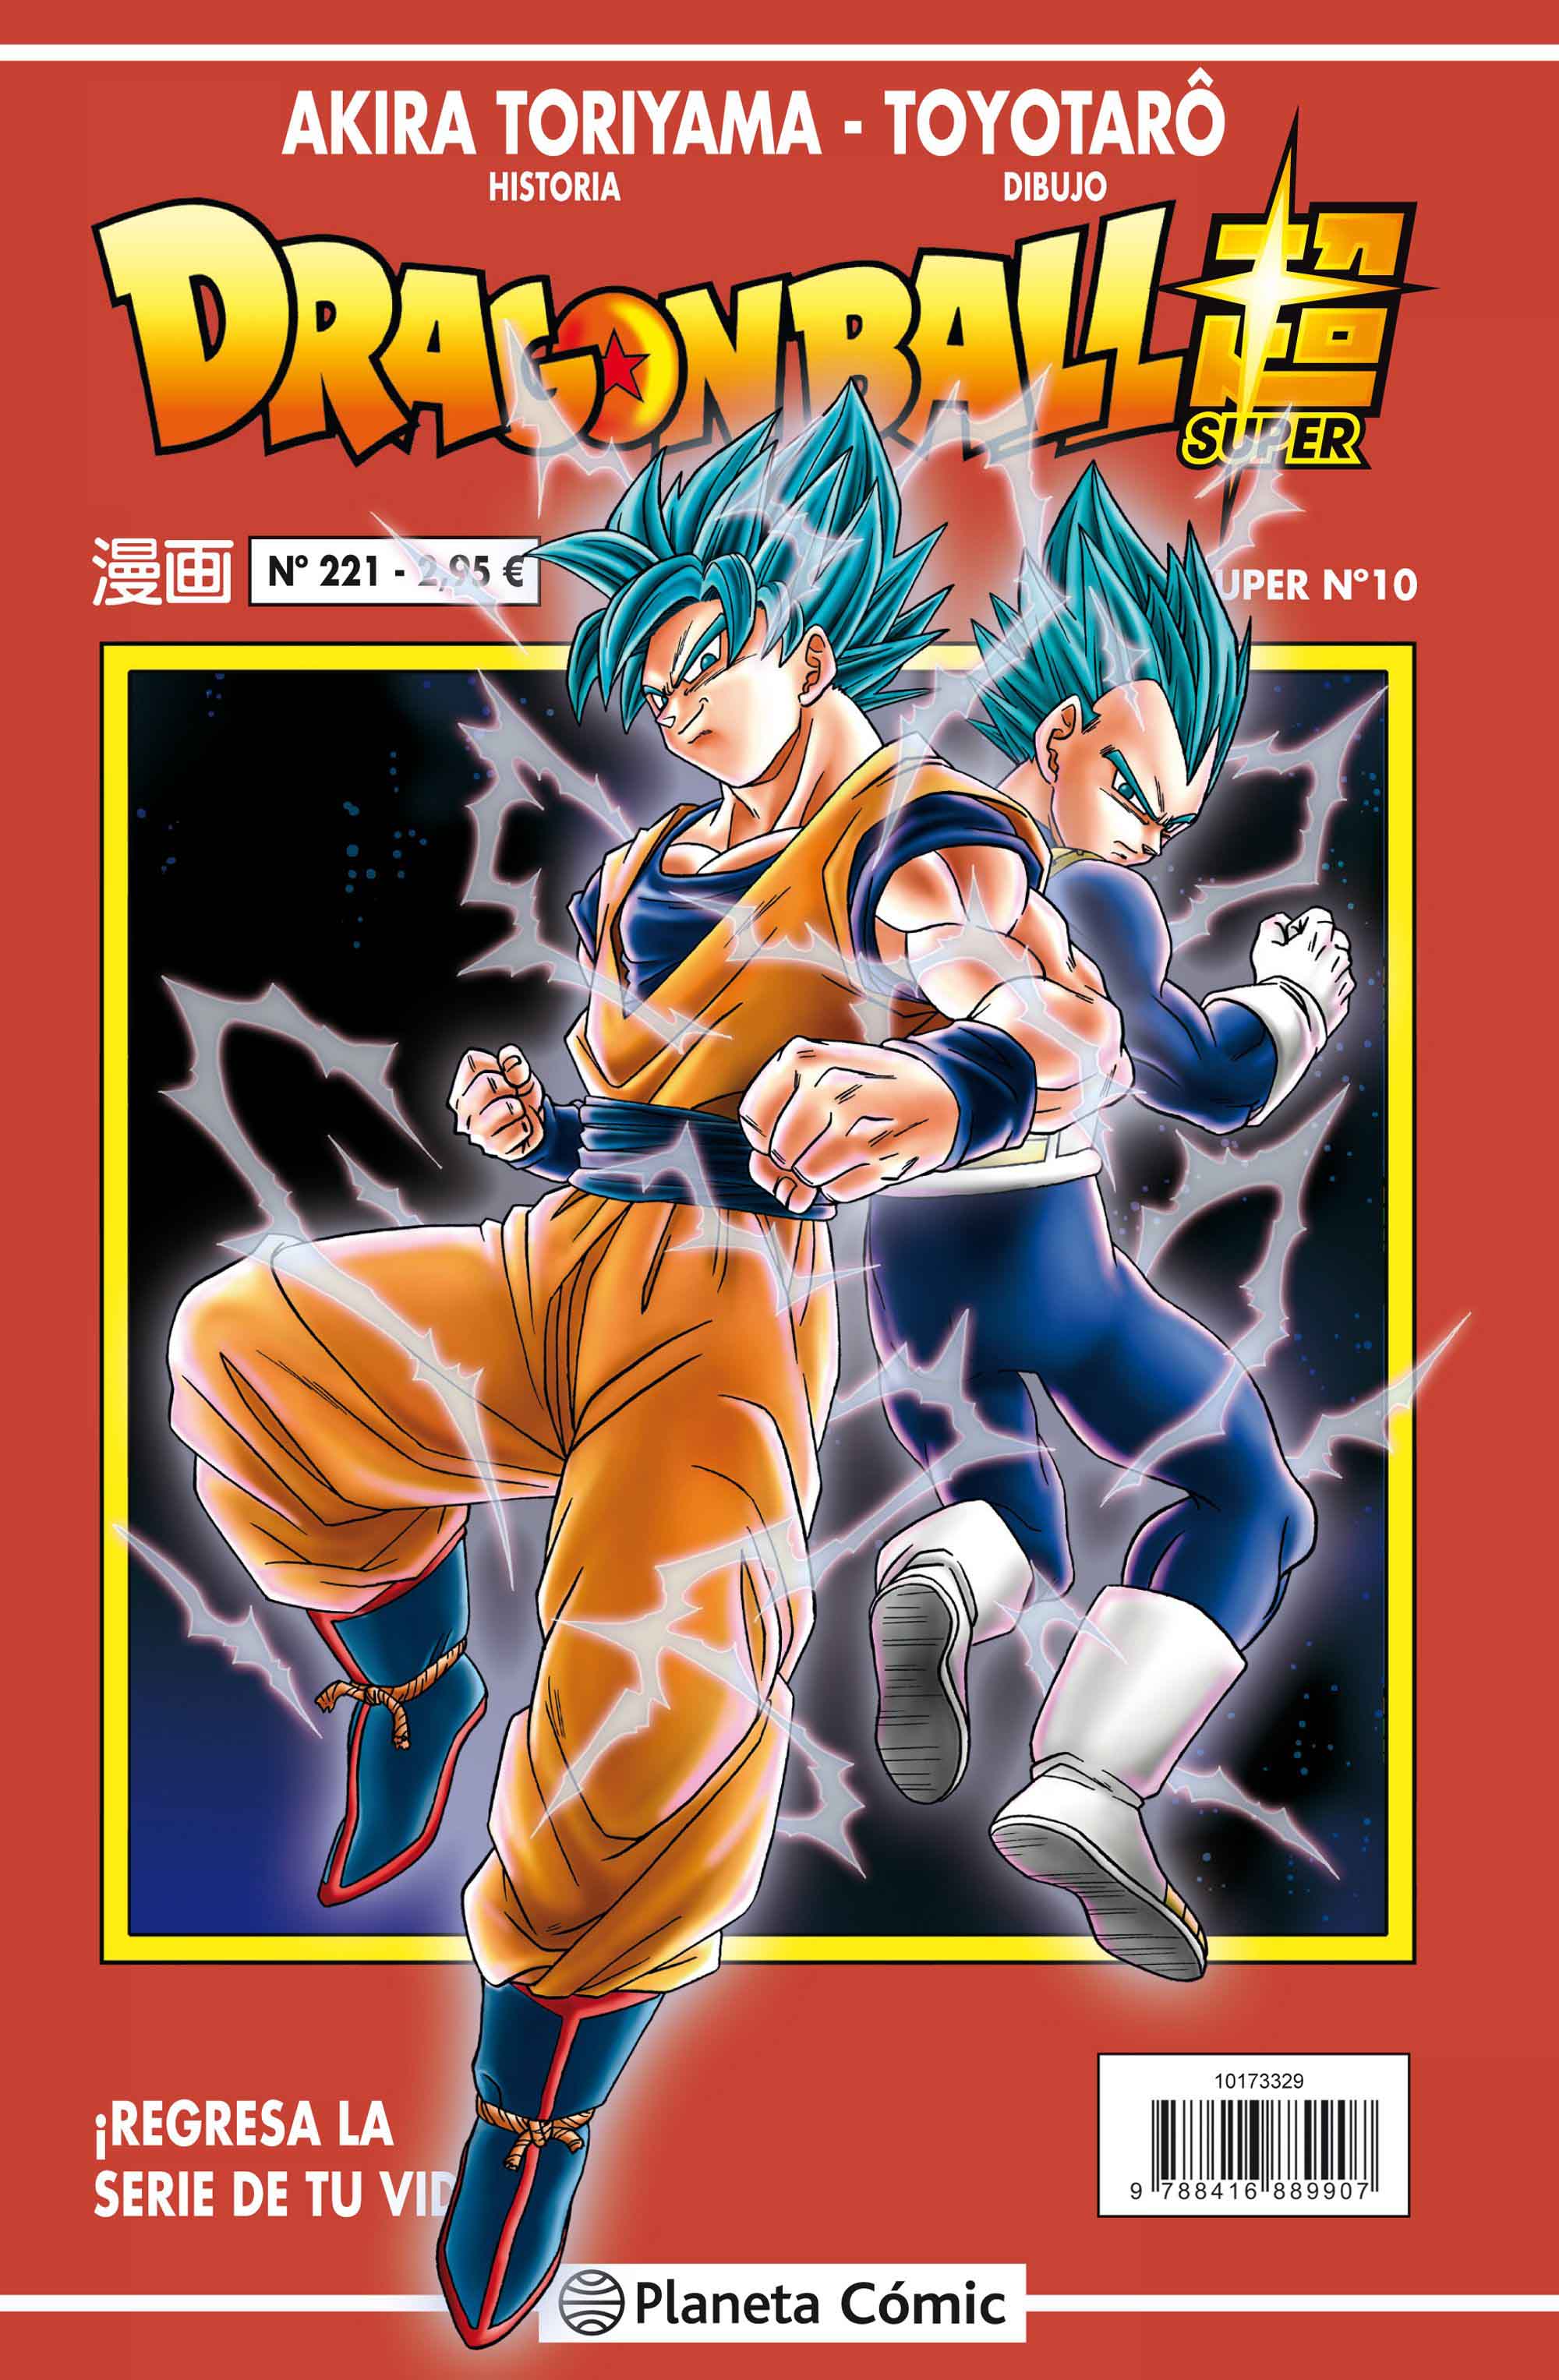 Reseña: ‘Dragon Ball Super’ nº 10 / nº 221 Serie Roja